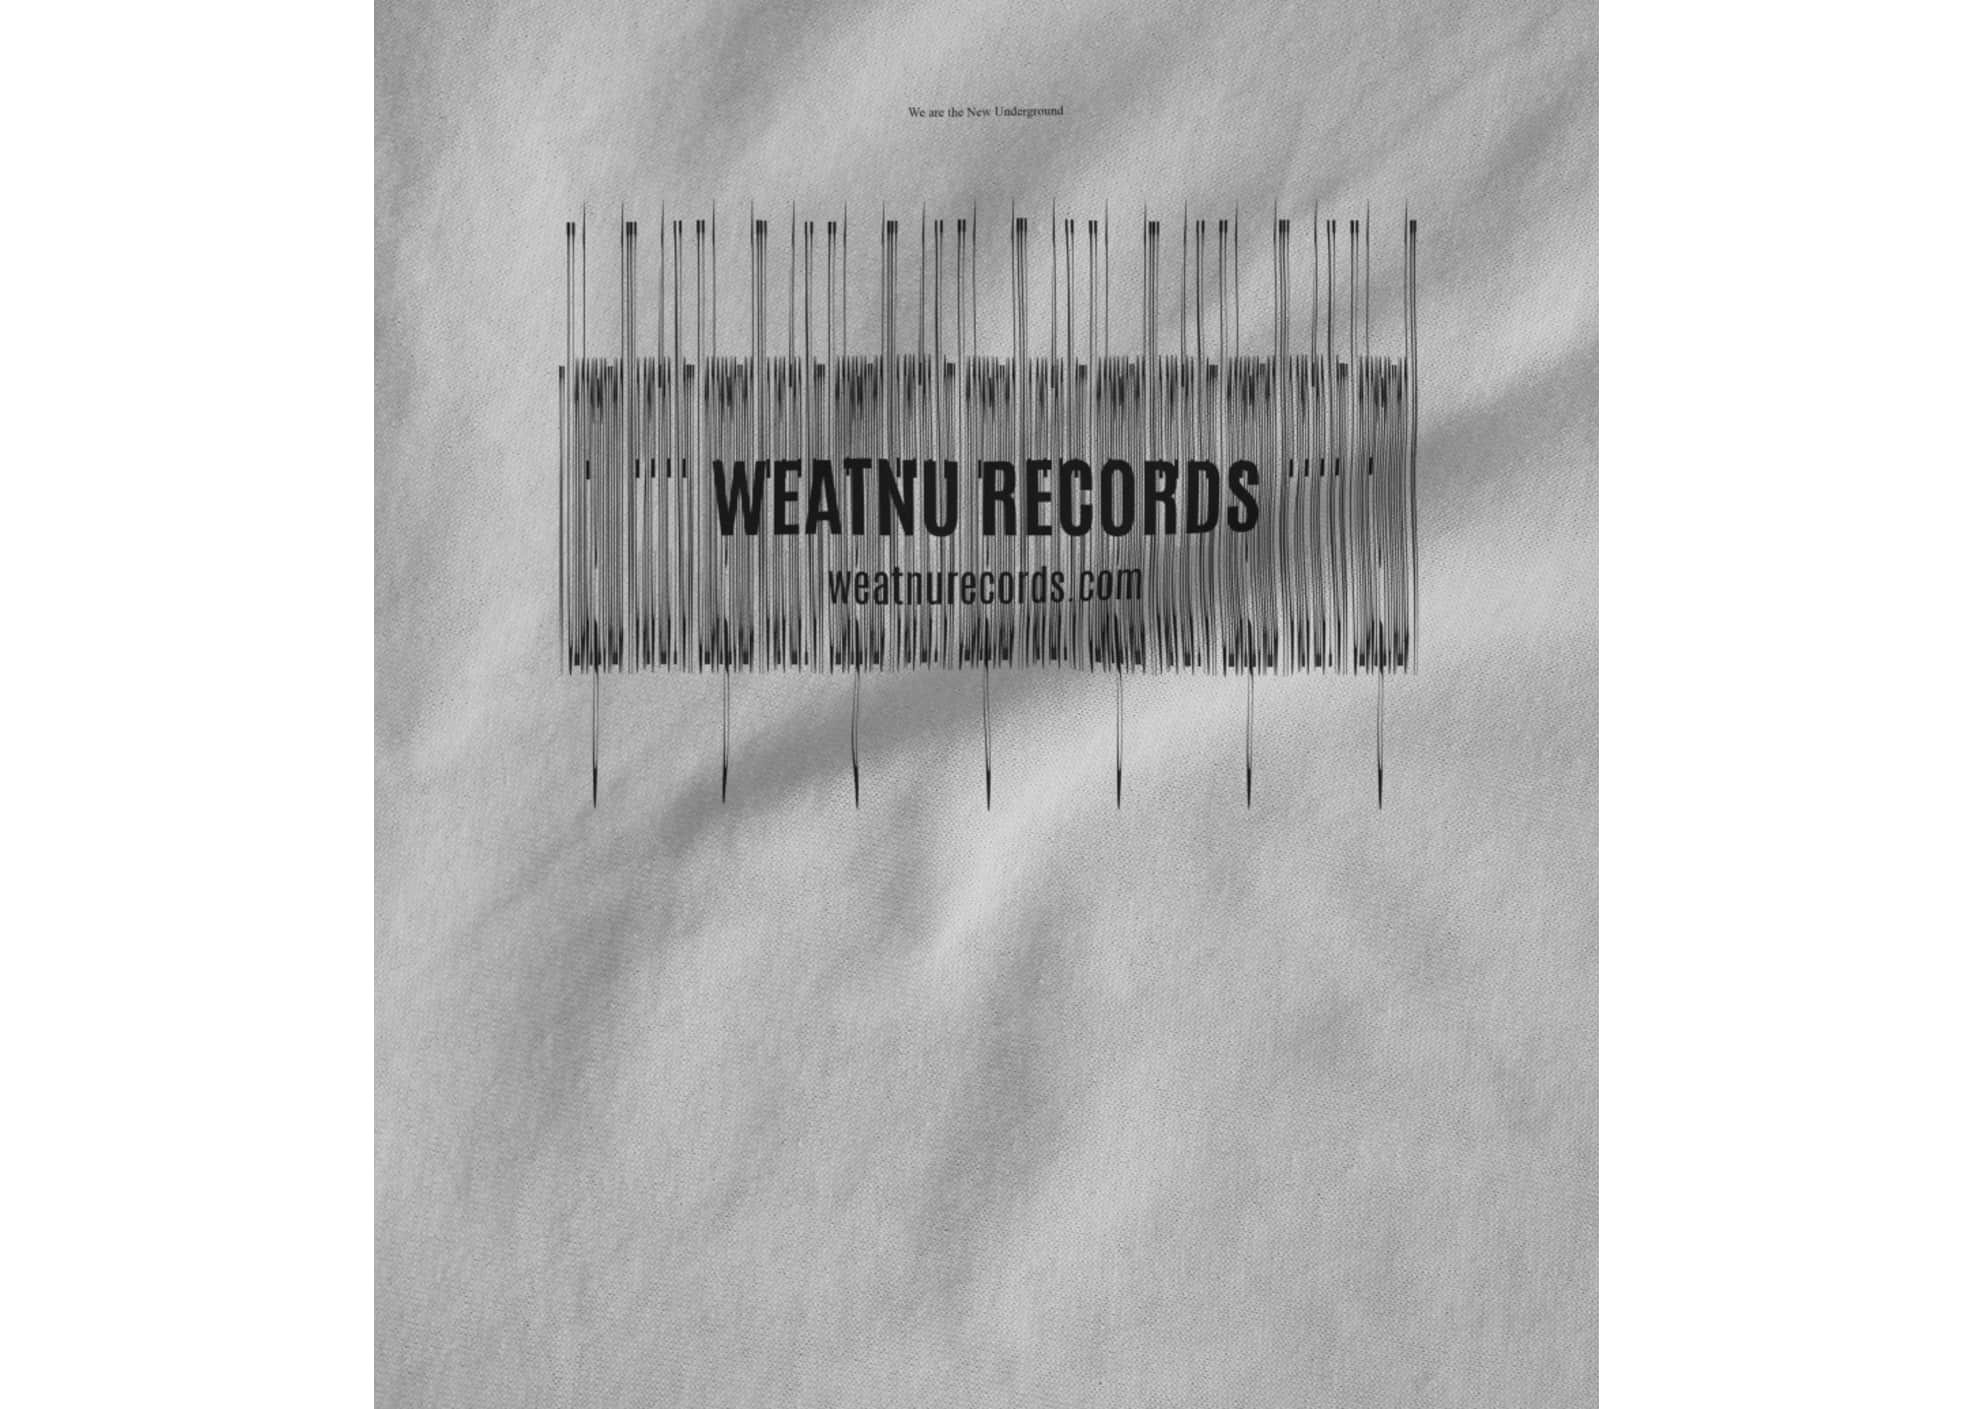 Weatnu records weatnu records  concept  1534533729